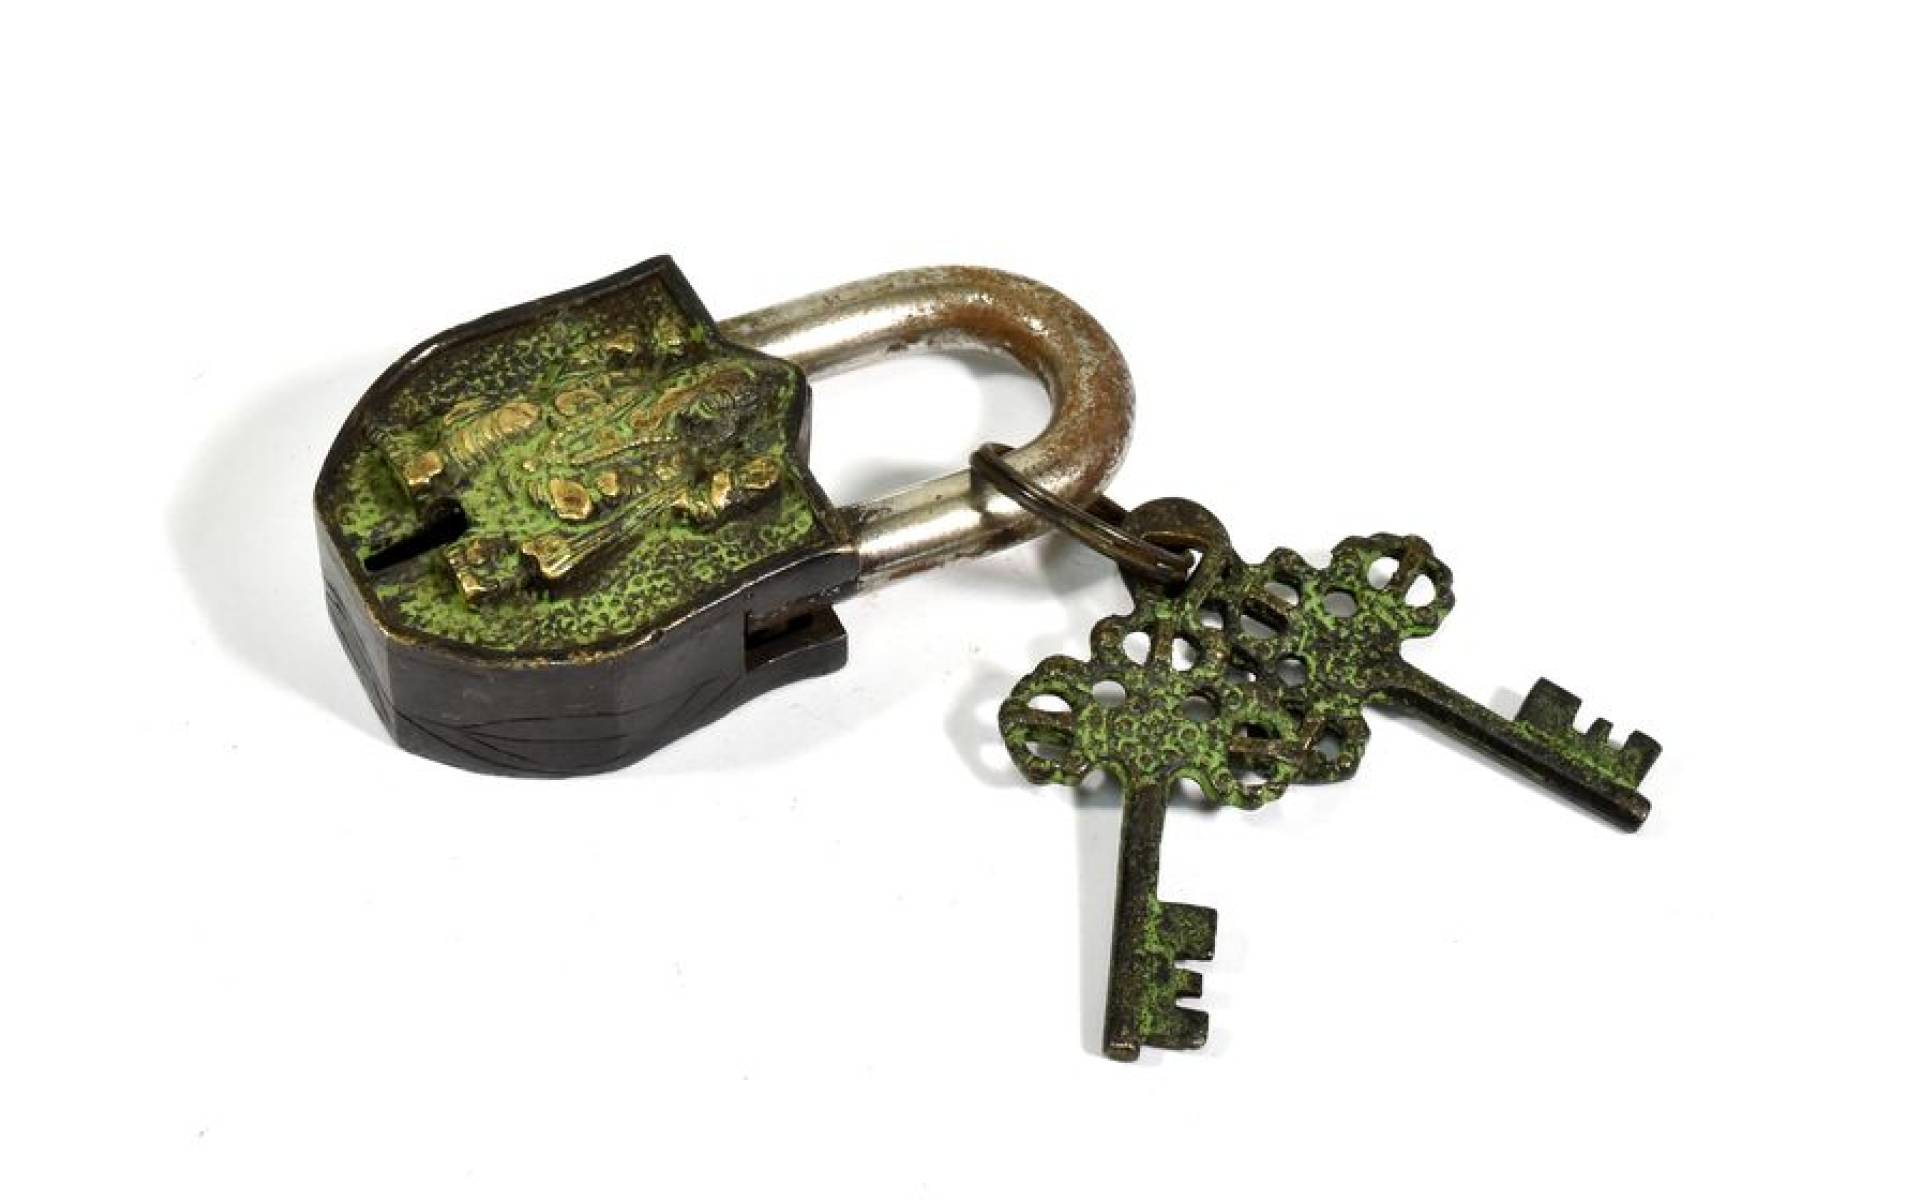 Visiaci zámok, Ganéš, zelená patina mosadz, dva kľúče v tvare dorje, 9cm